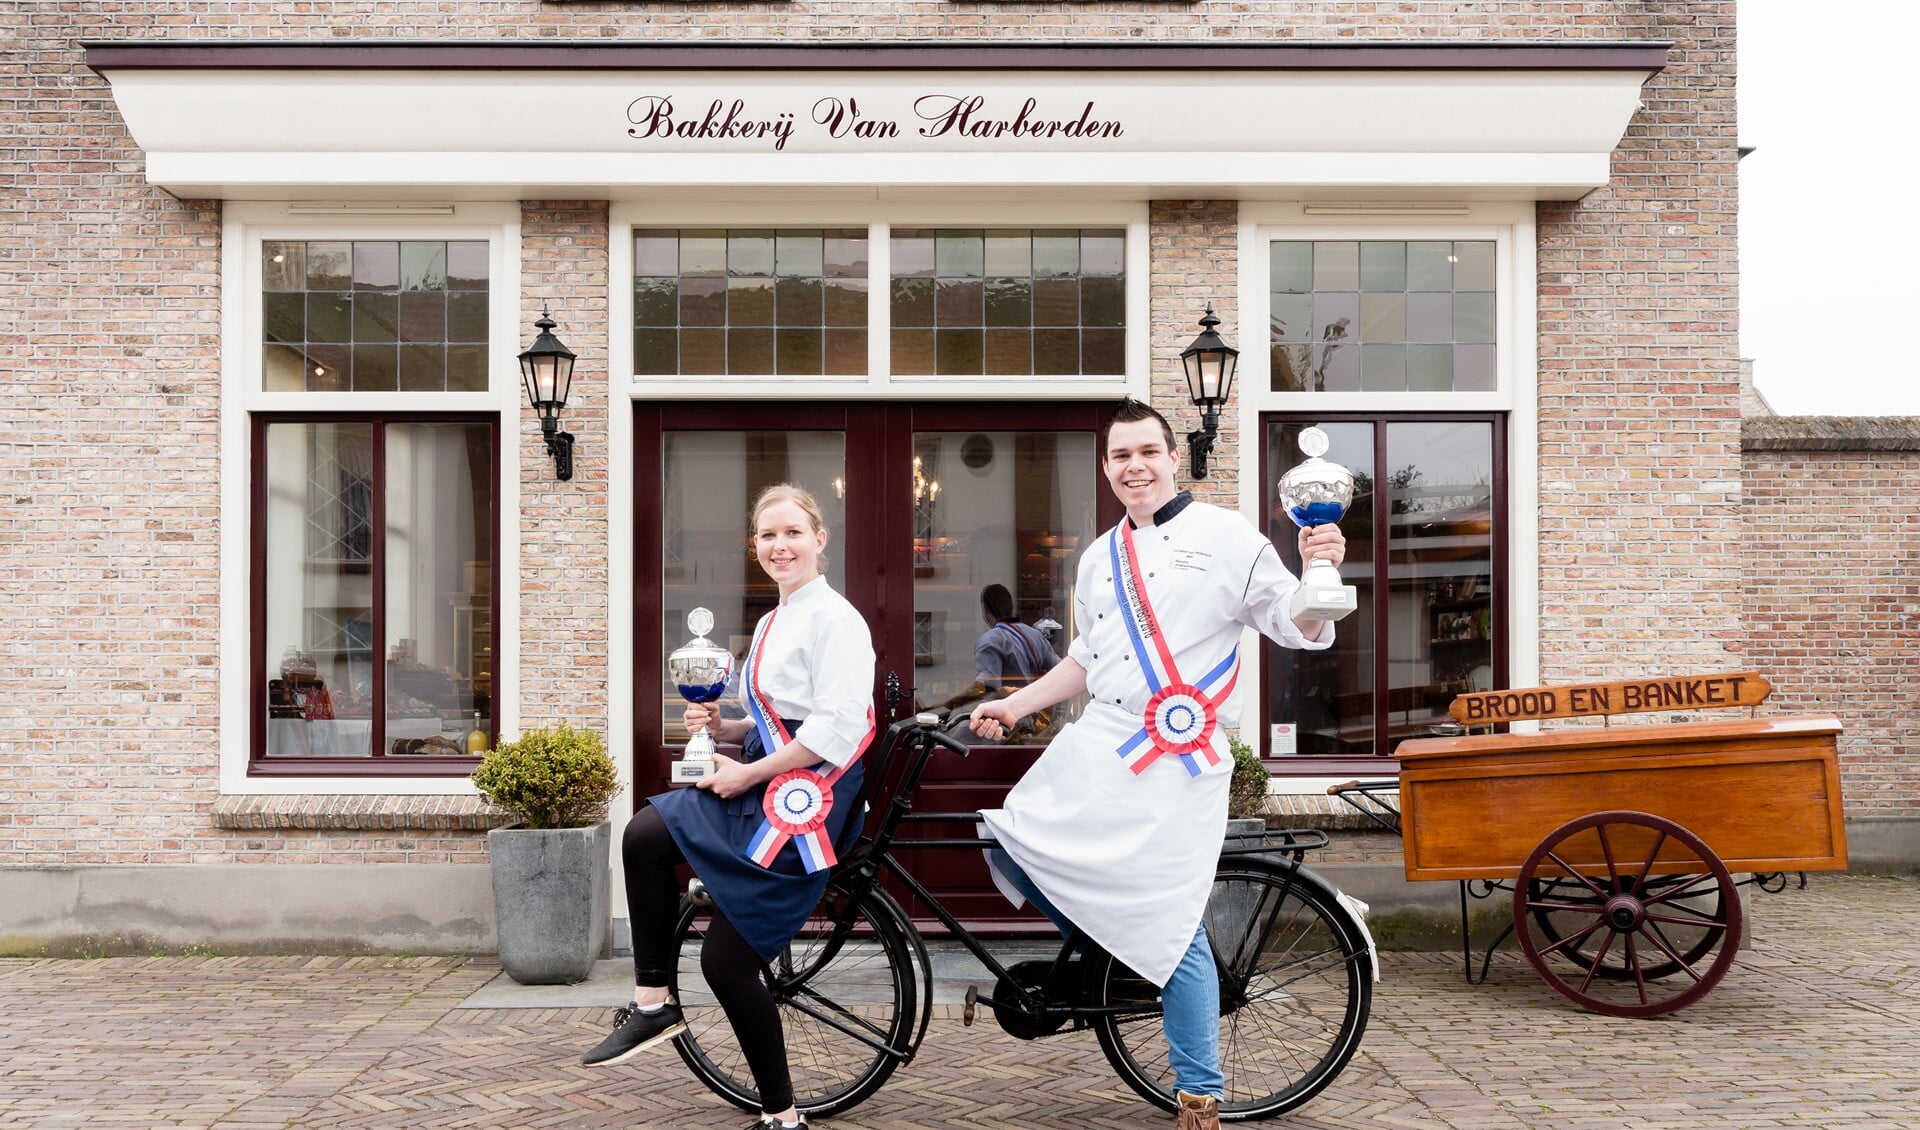 Lynda Timmer en Jan van Harberden voor de winkel van bakkerij Van Harberden in Melissant